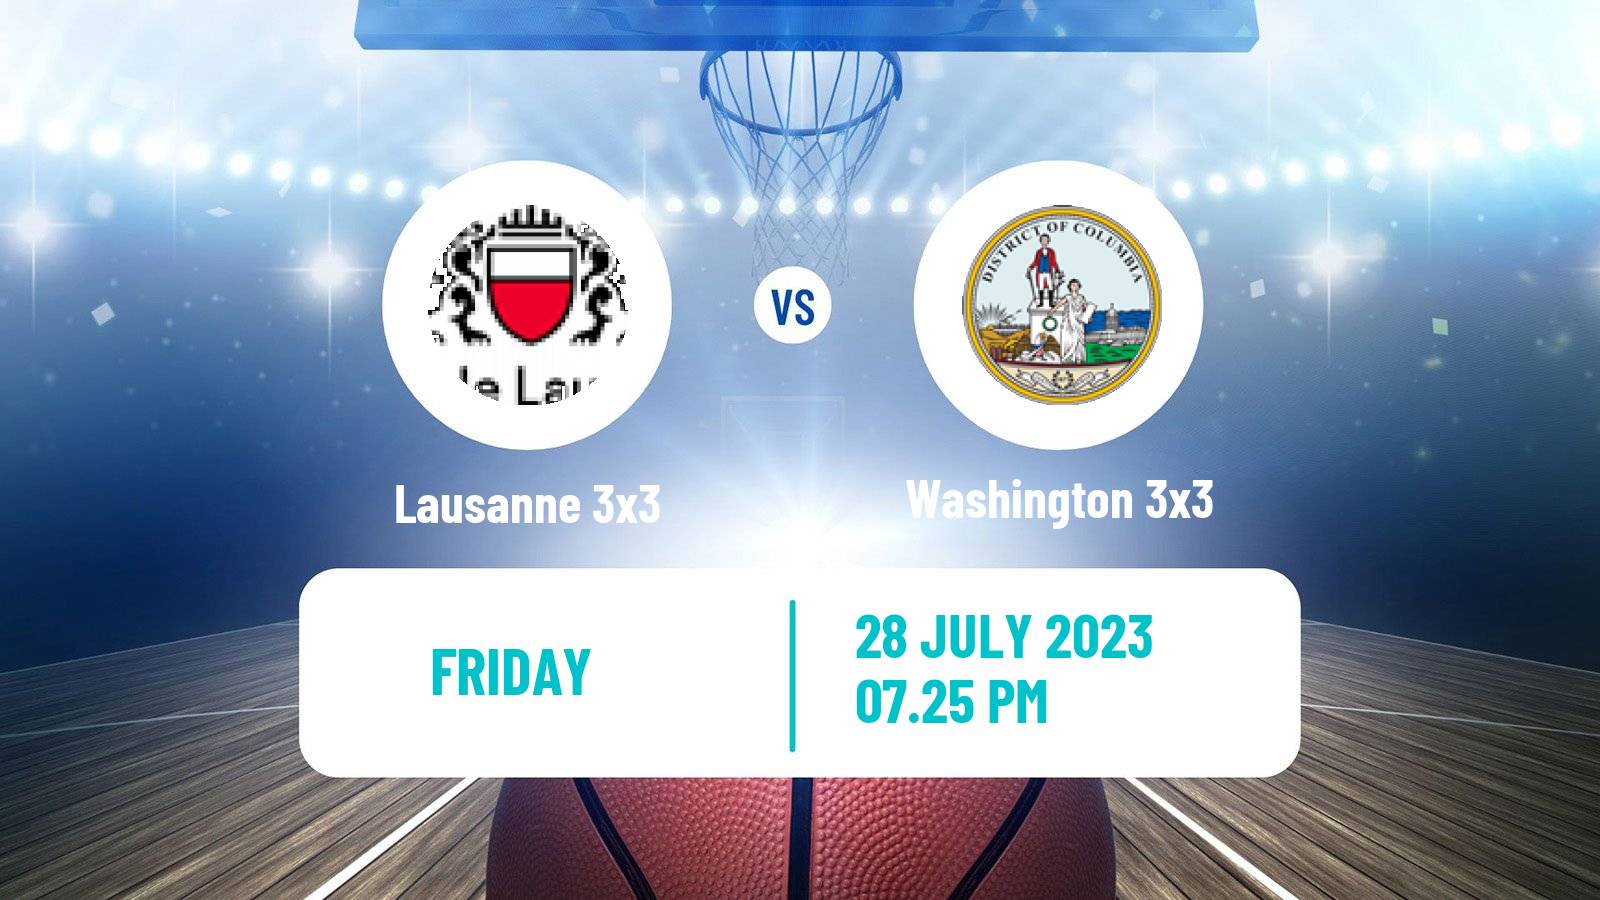 Basketball World Tour Edmonton 3x3 Lausanne 3x3 - Washington 3x3